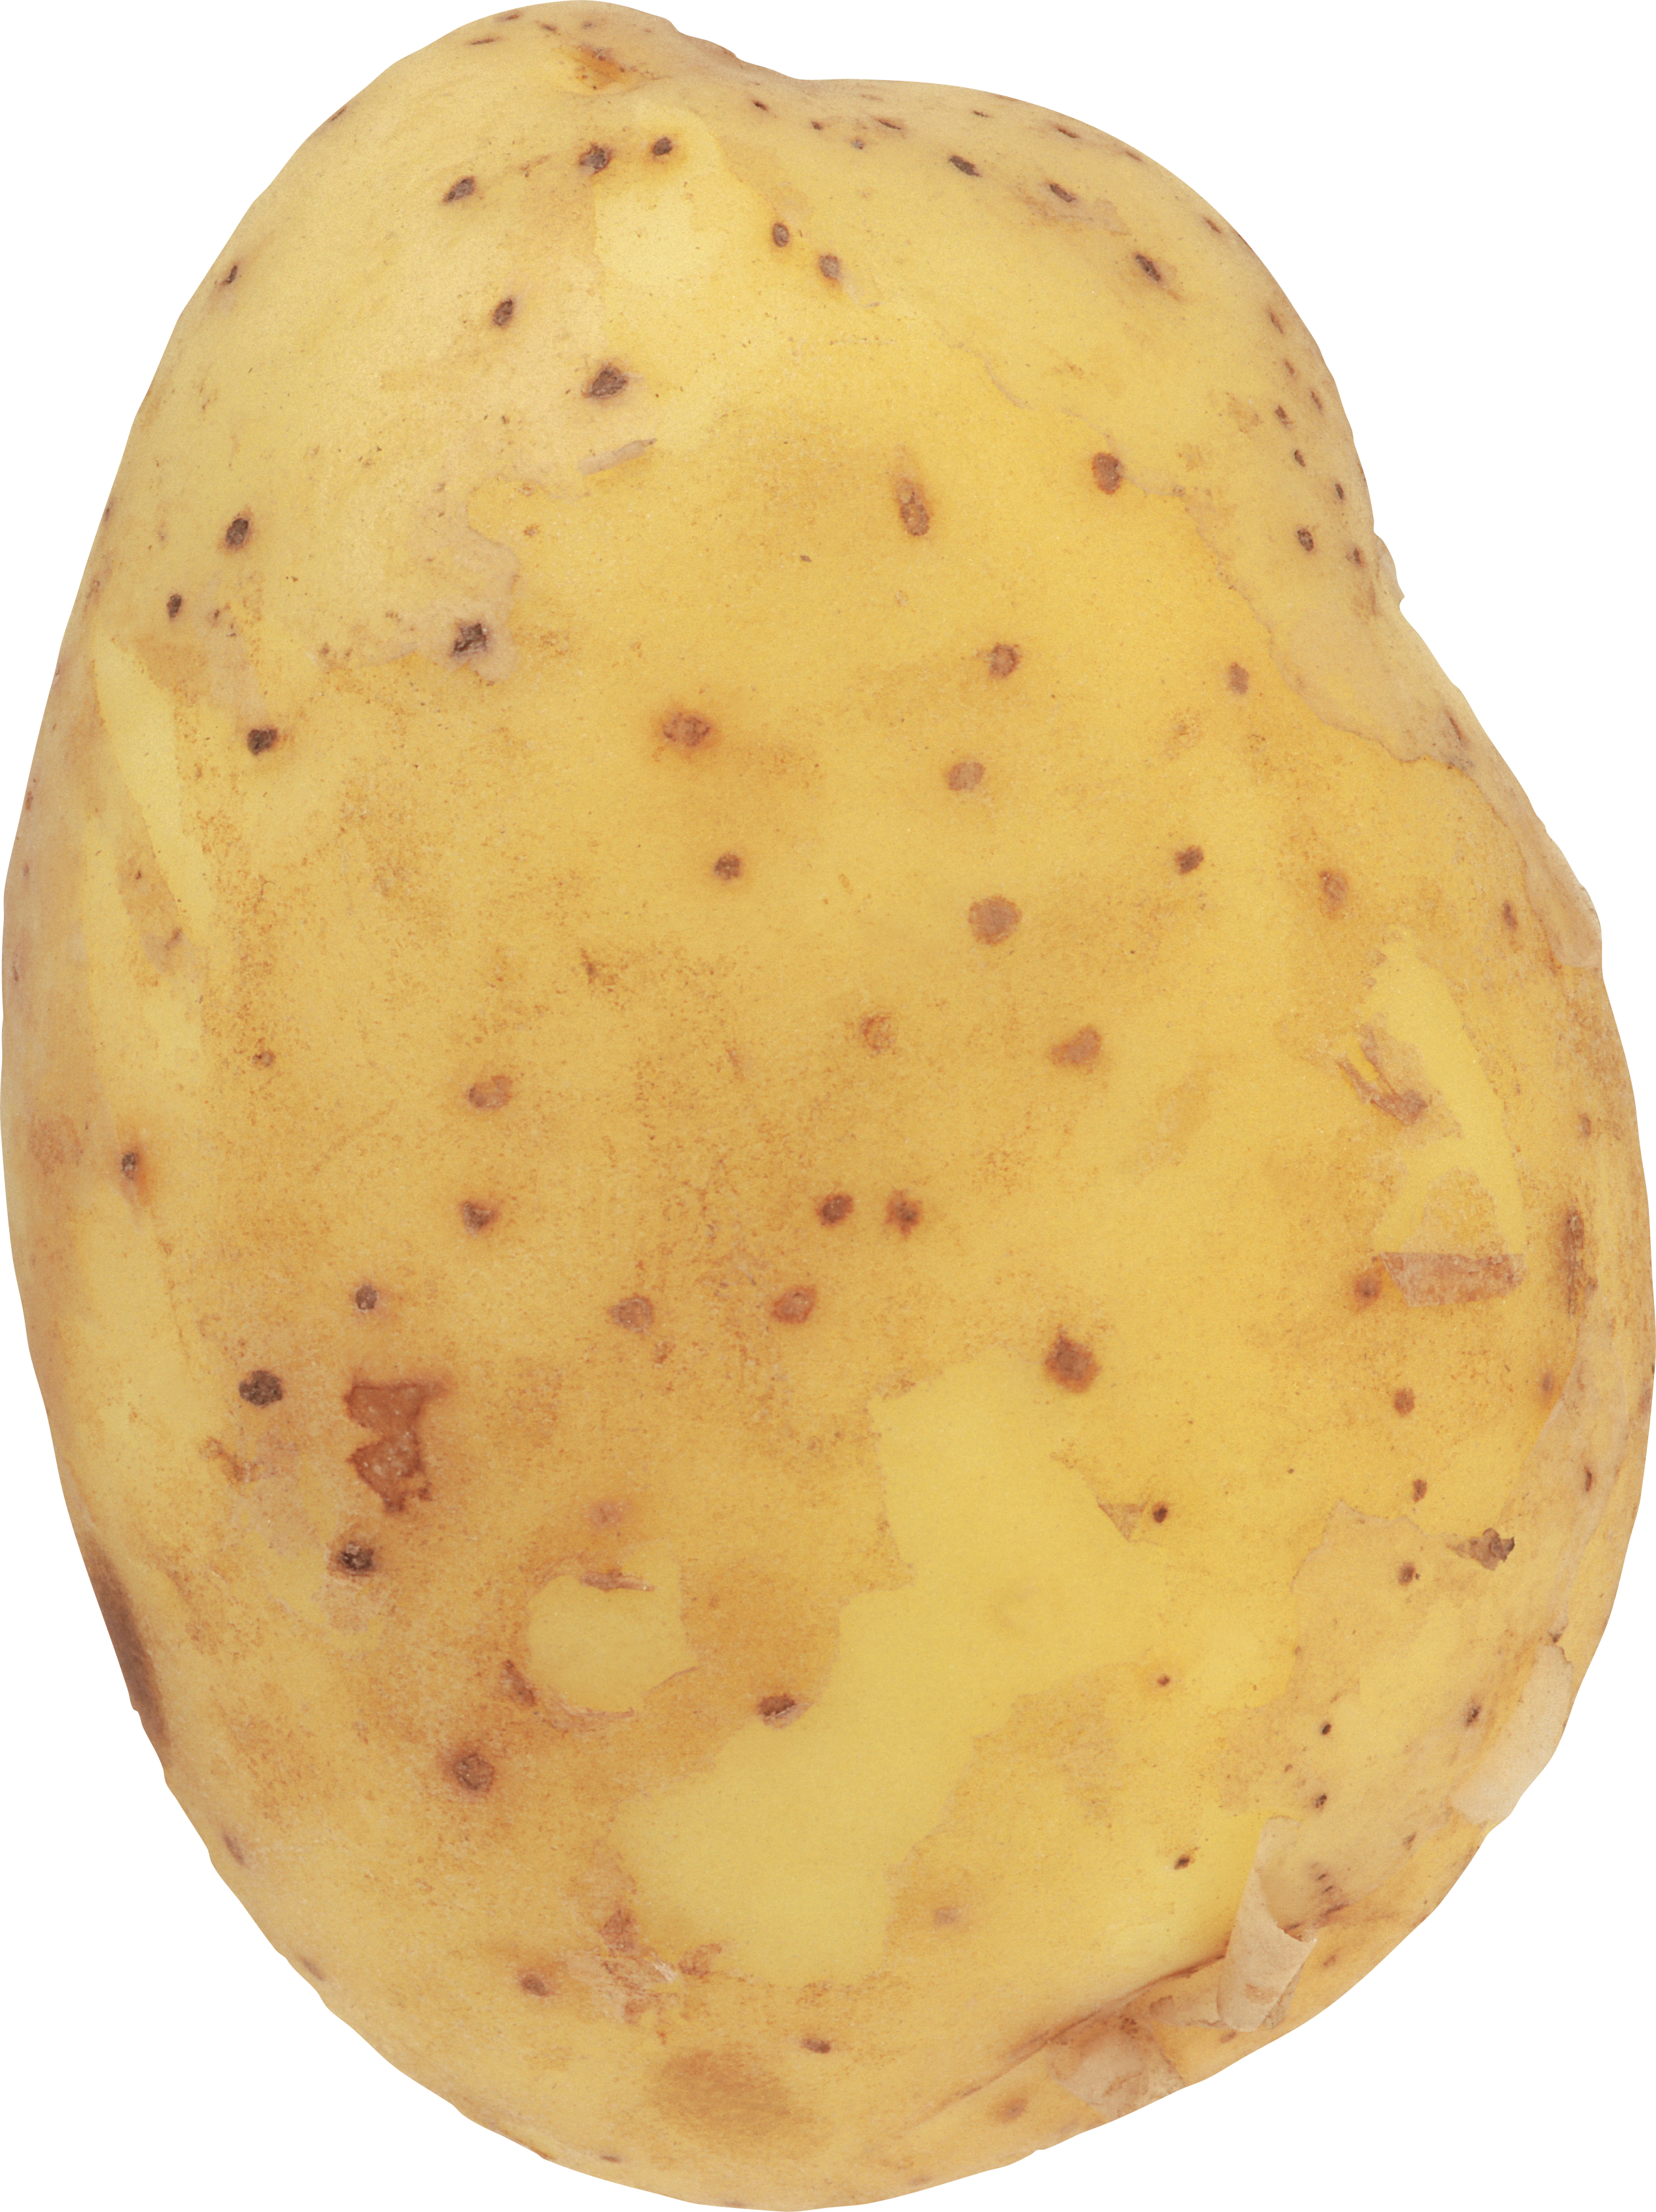 Potatoes picture. Картошка. Картошка без фона. Картошка на белом фоне. Картошка одна.